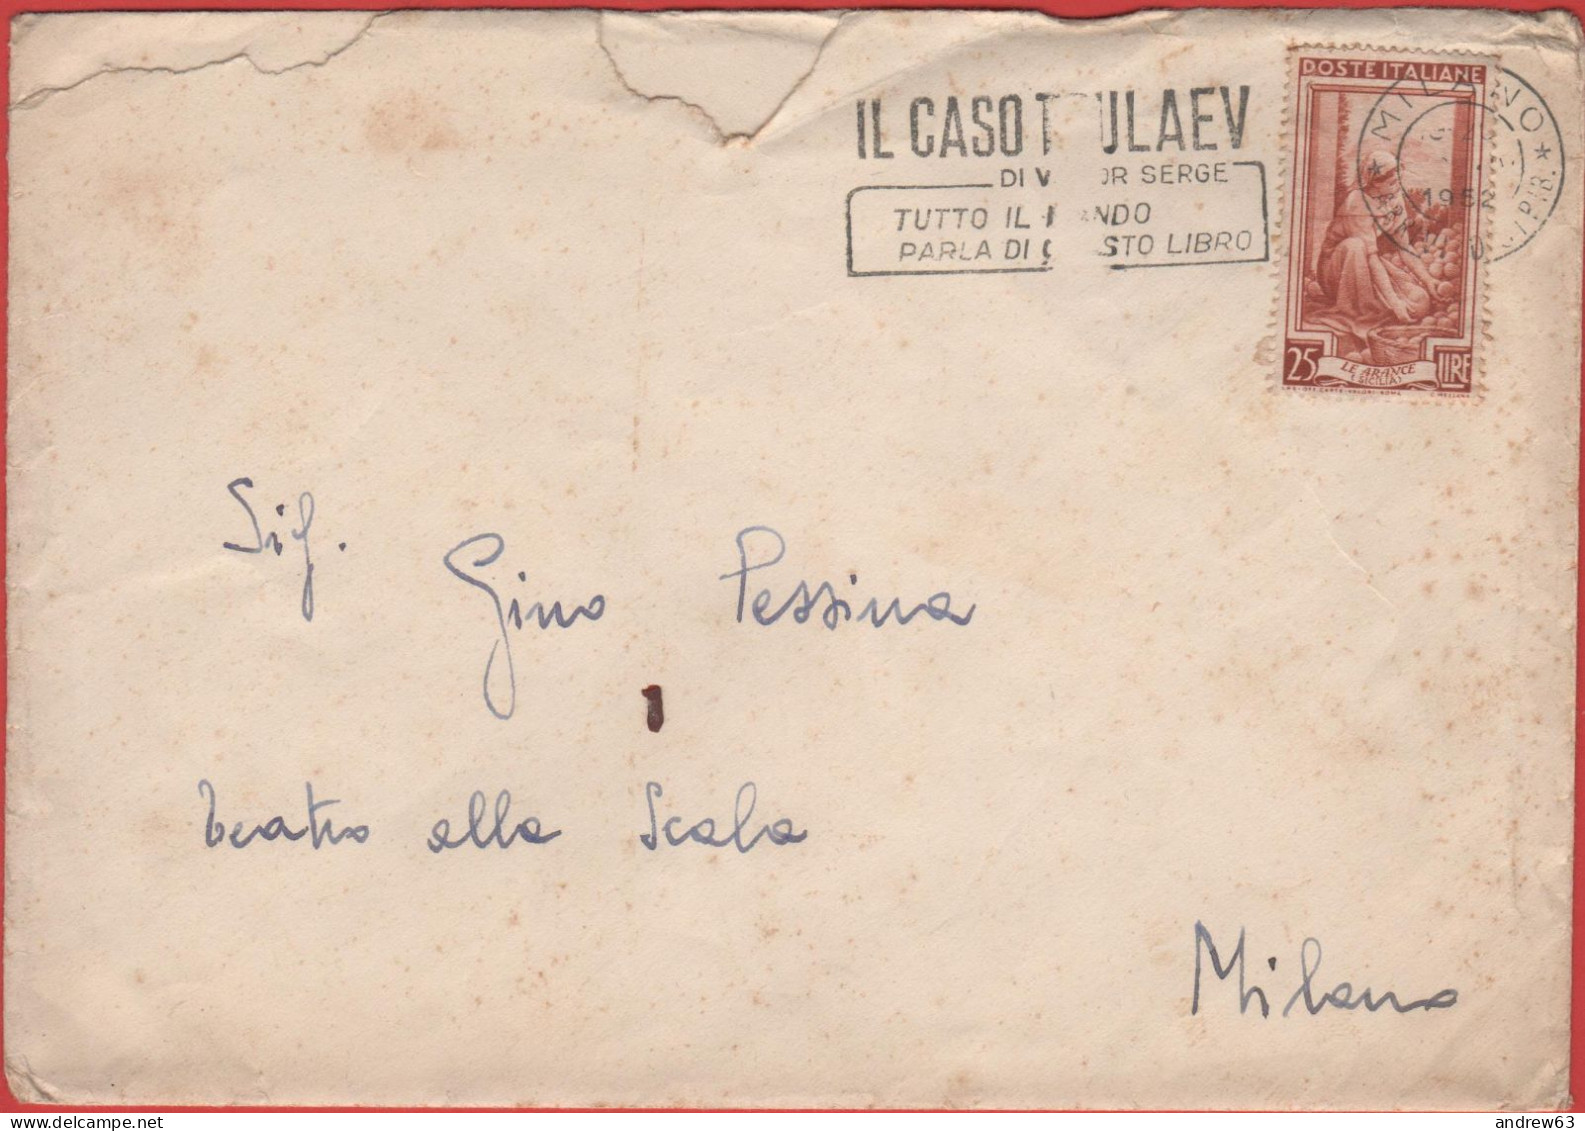 ITALIA - Storia Postale Repubblica - 1952 - 25 Italia Al Lavoro (Isolato) + Flamme Il Caso Tulaev - Lettera - Viaggiata - 1946-60: Storia Postale